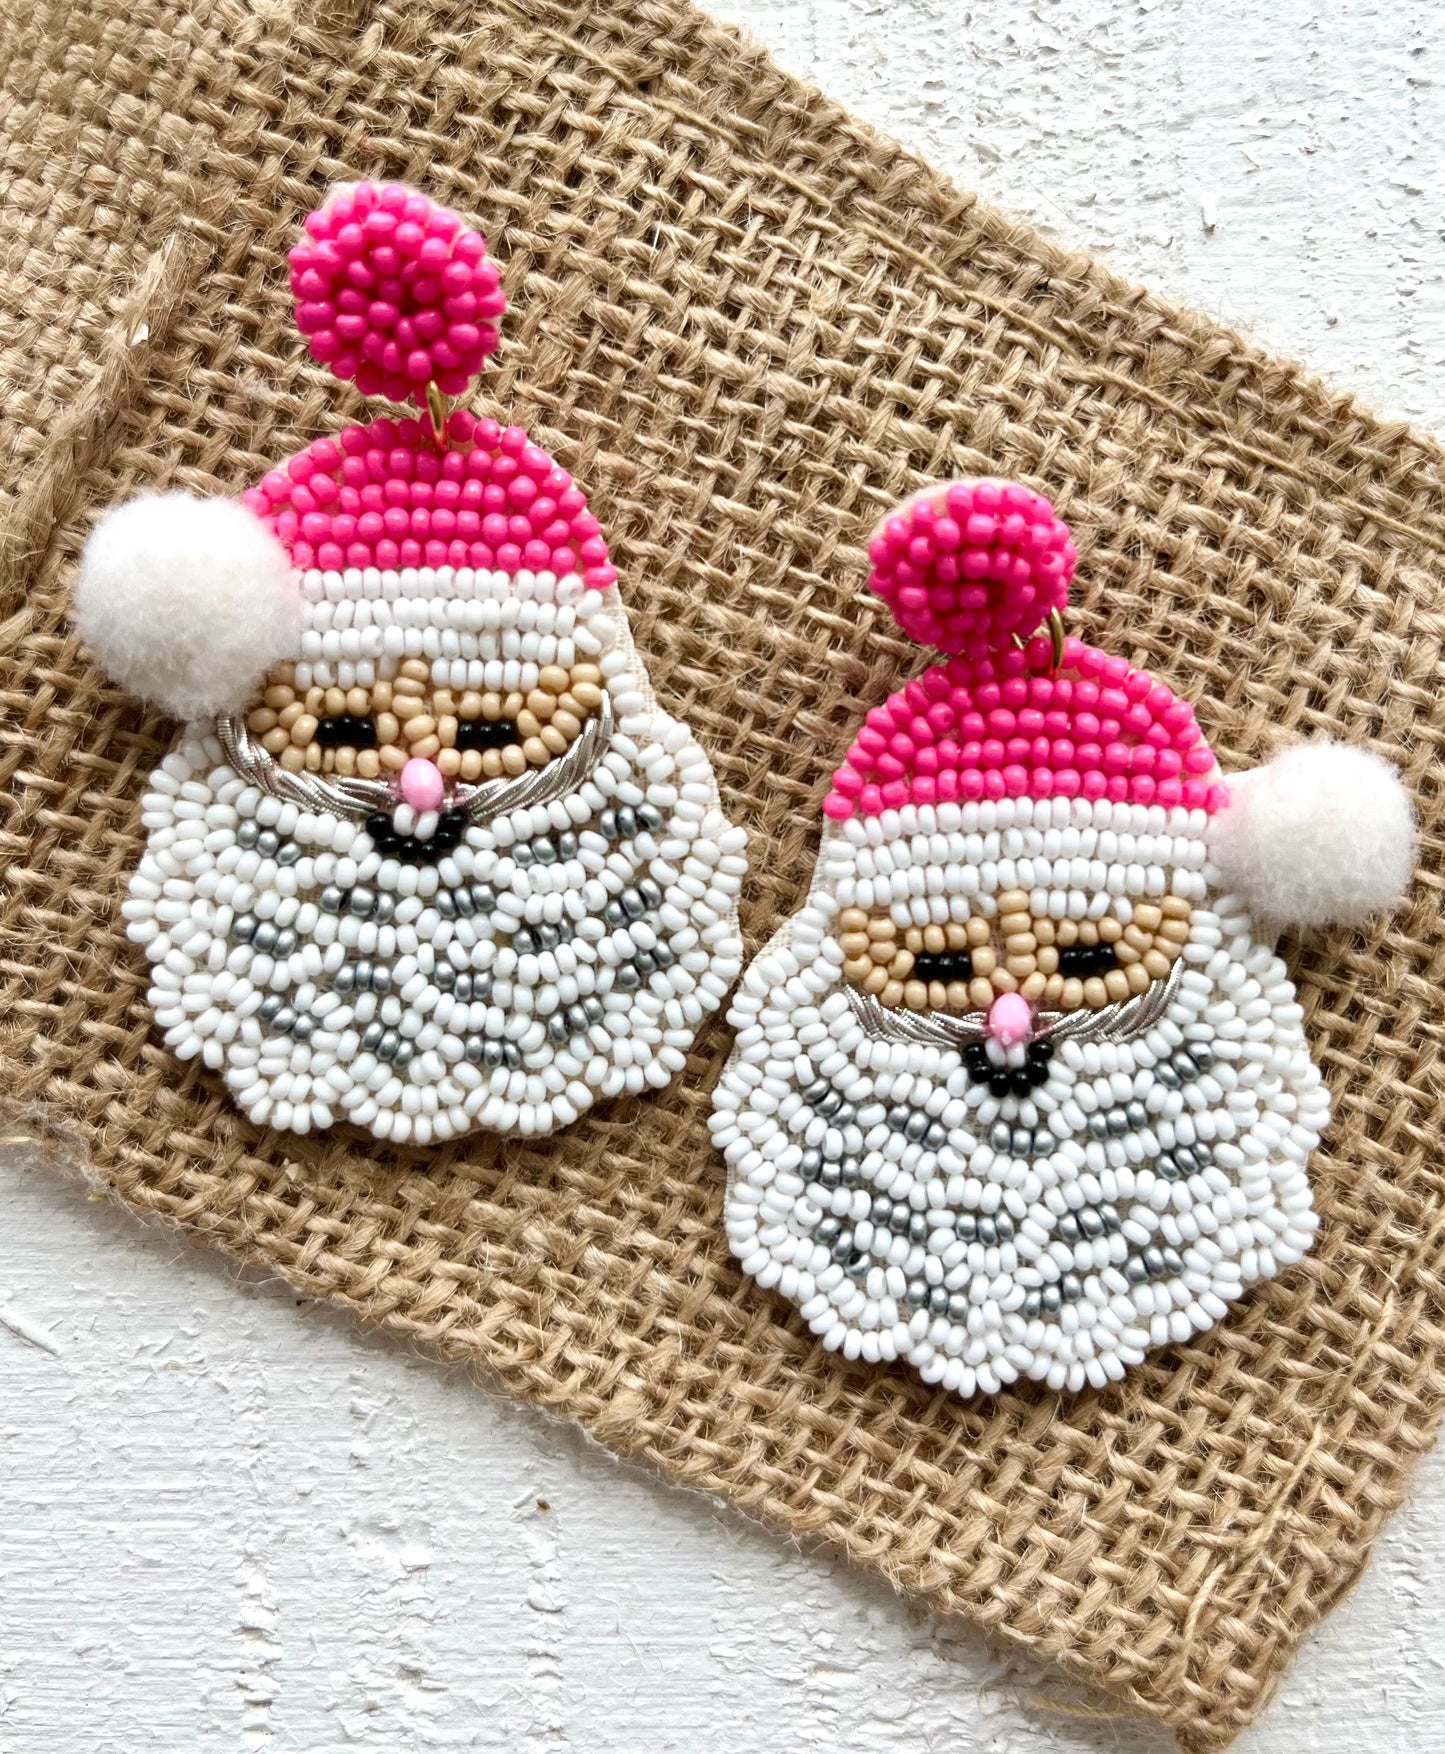 Pink Santa Earrings